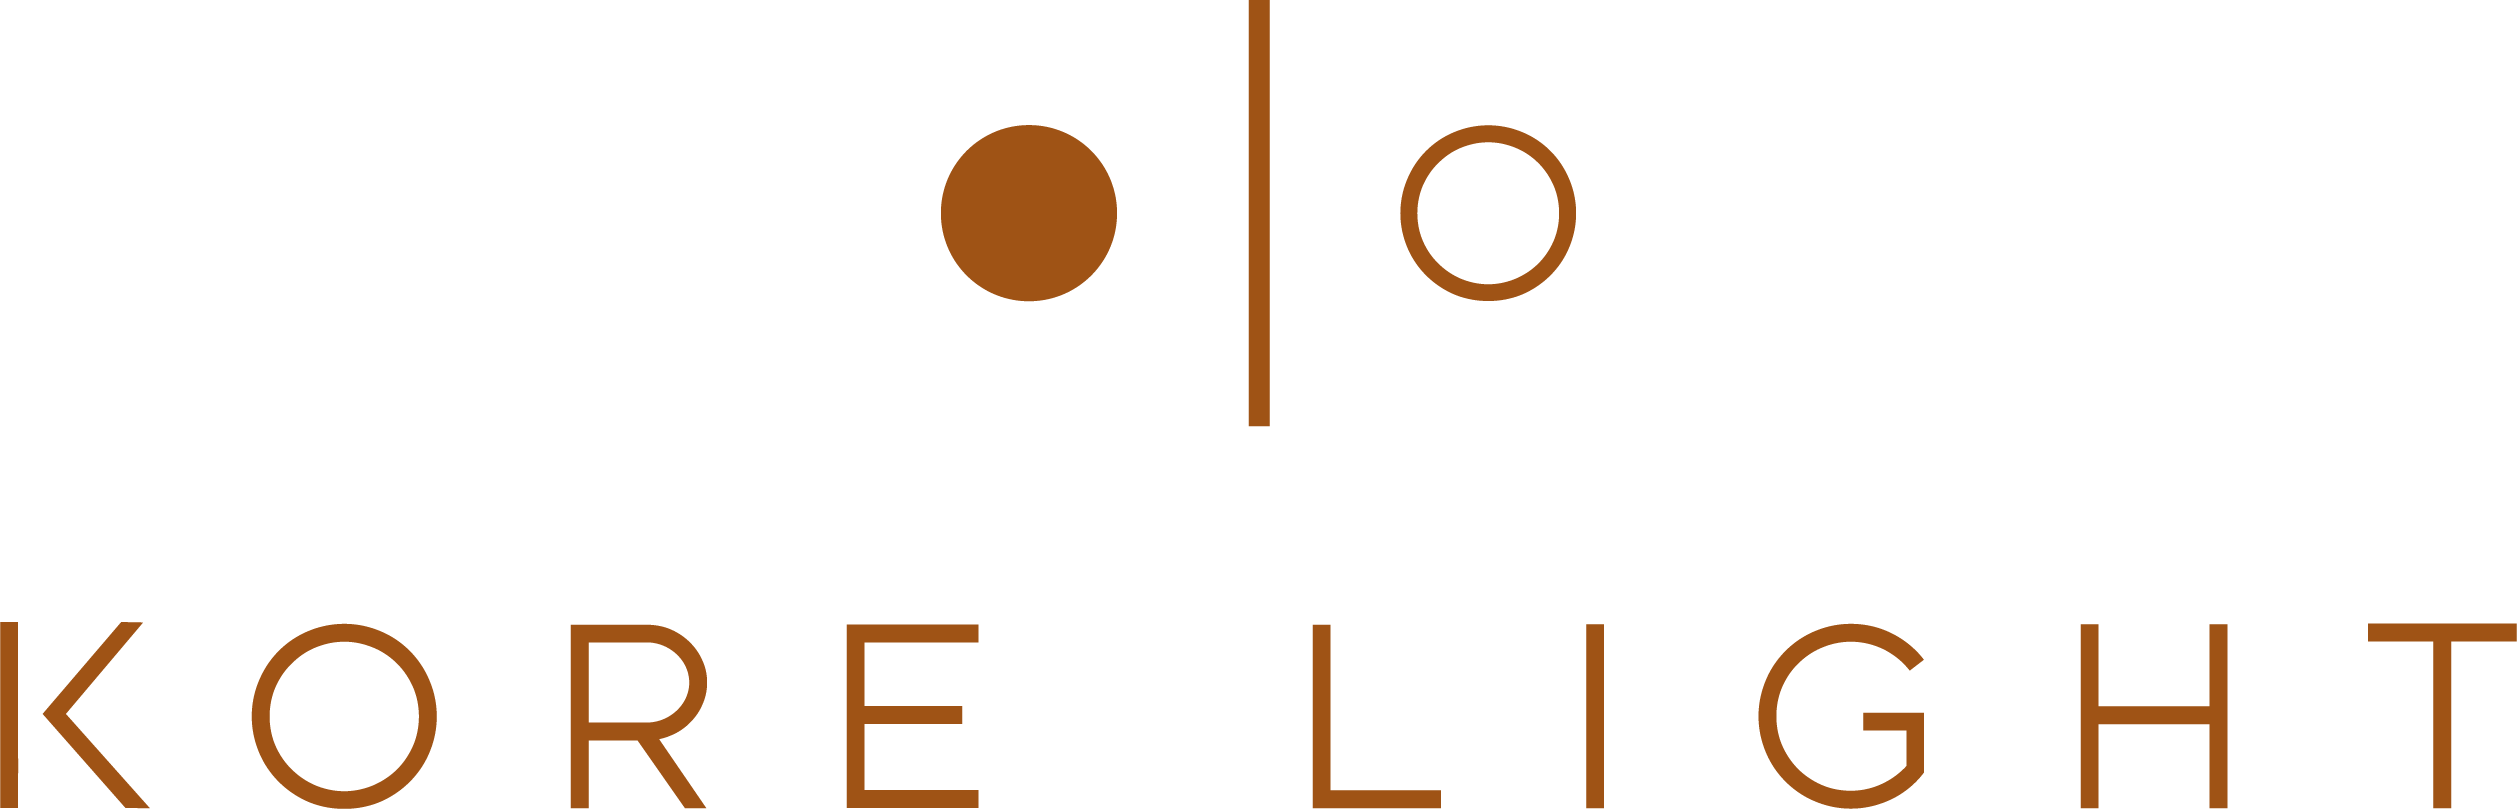 KoreLight logo.png